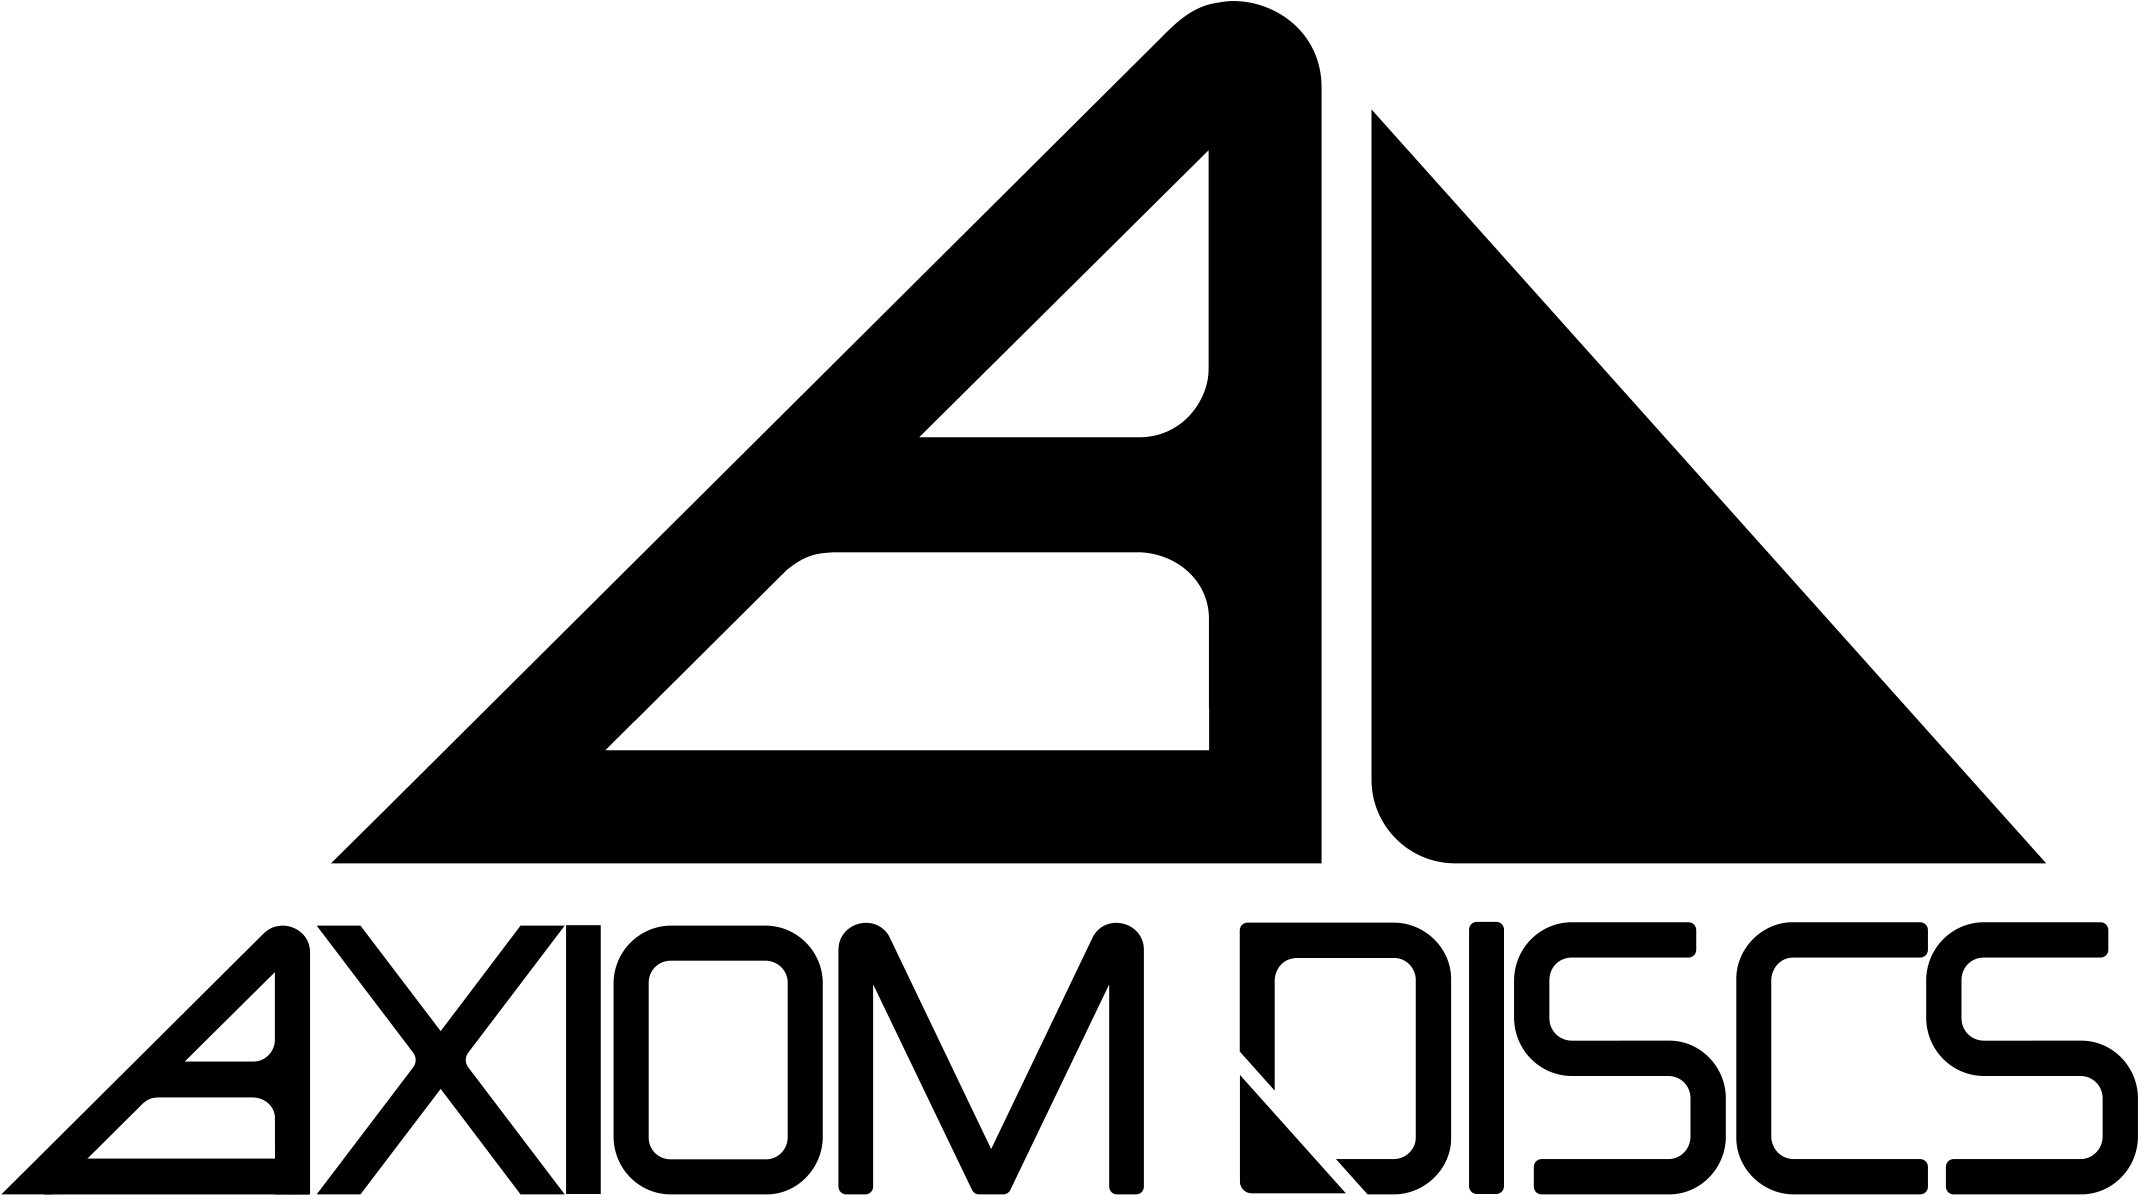 Axiom Discs Pyramid With Text - Axiom Discs (2437x1275)